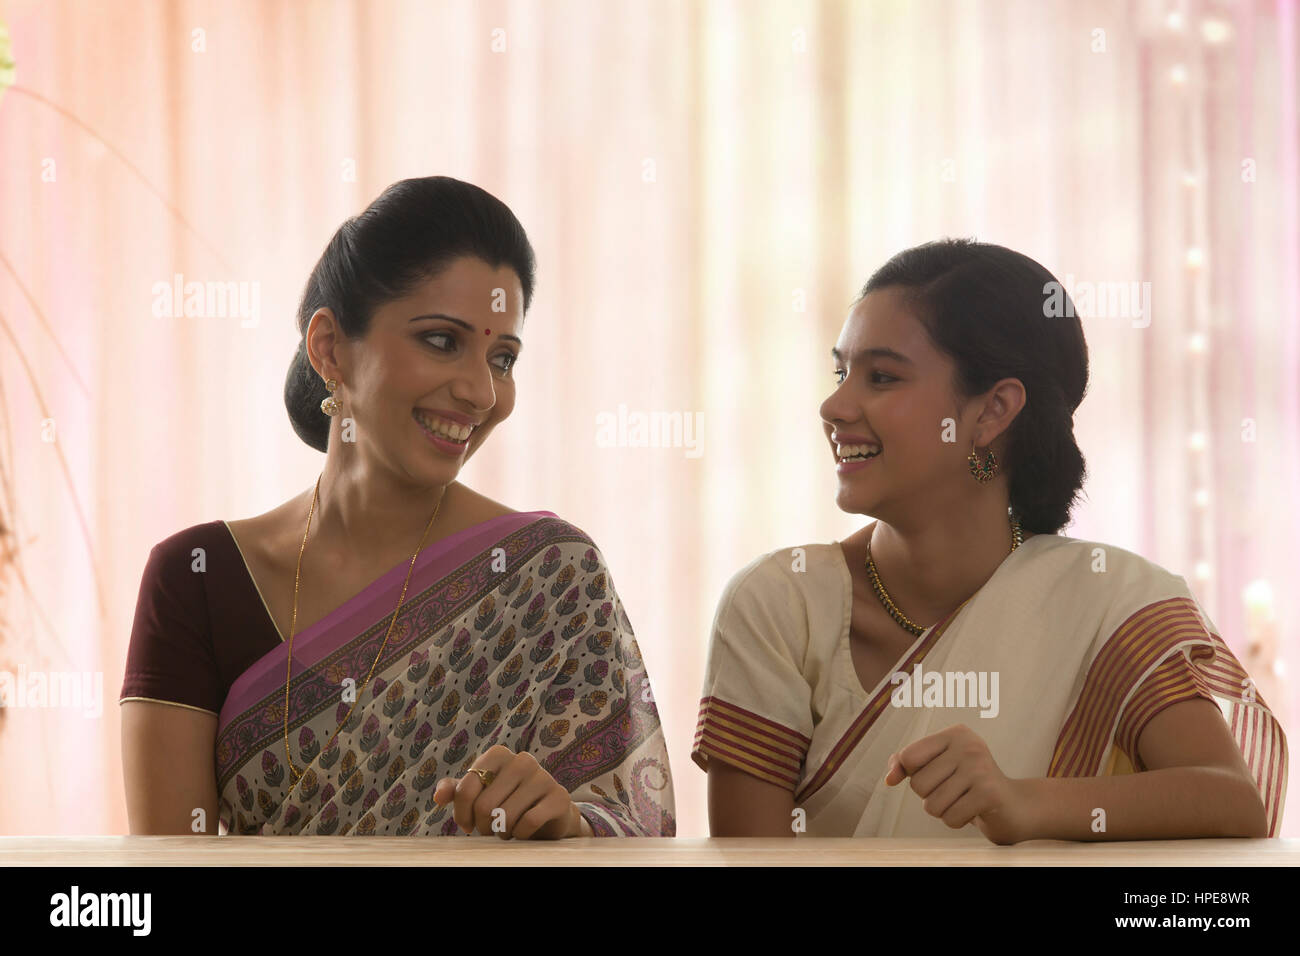 Lächelnd in Sari Tochter mit ihrer Mutter am Tisch sitzen Stockfoto